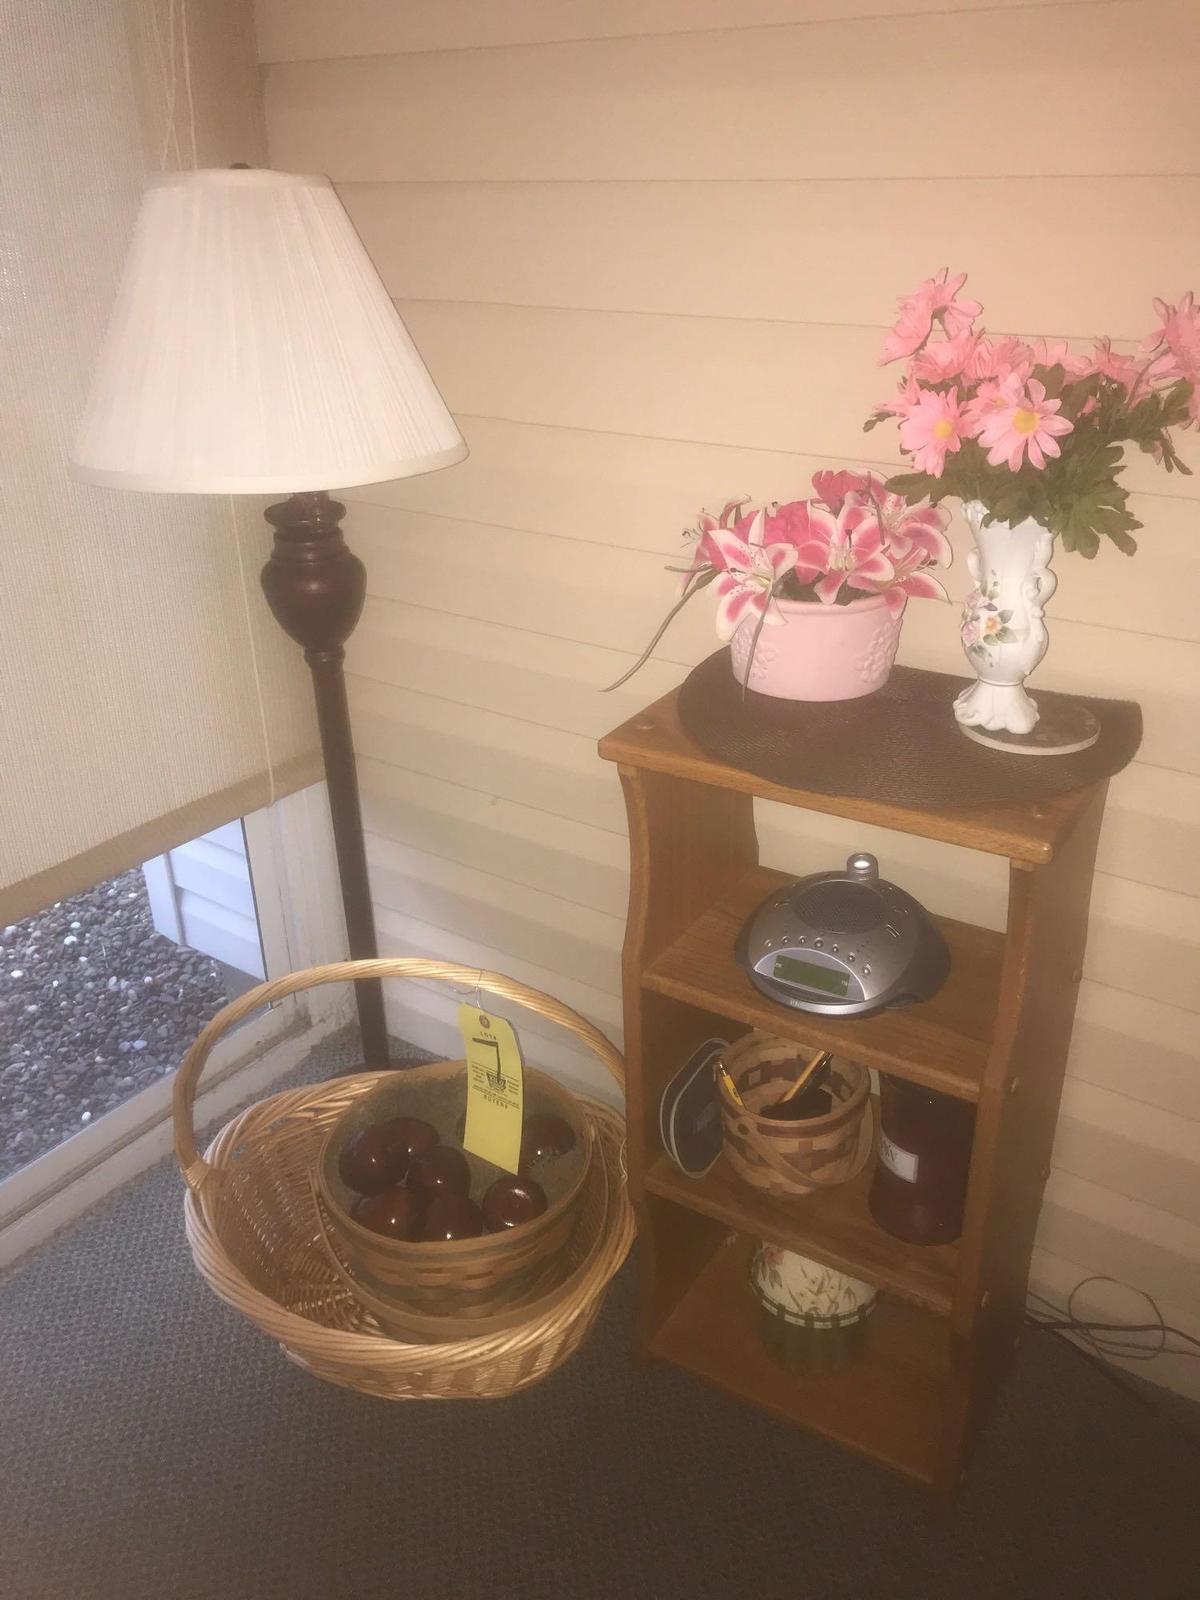 Oak shelf, baskets, lamp, decor